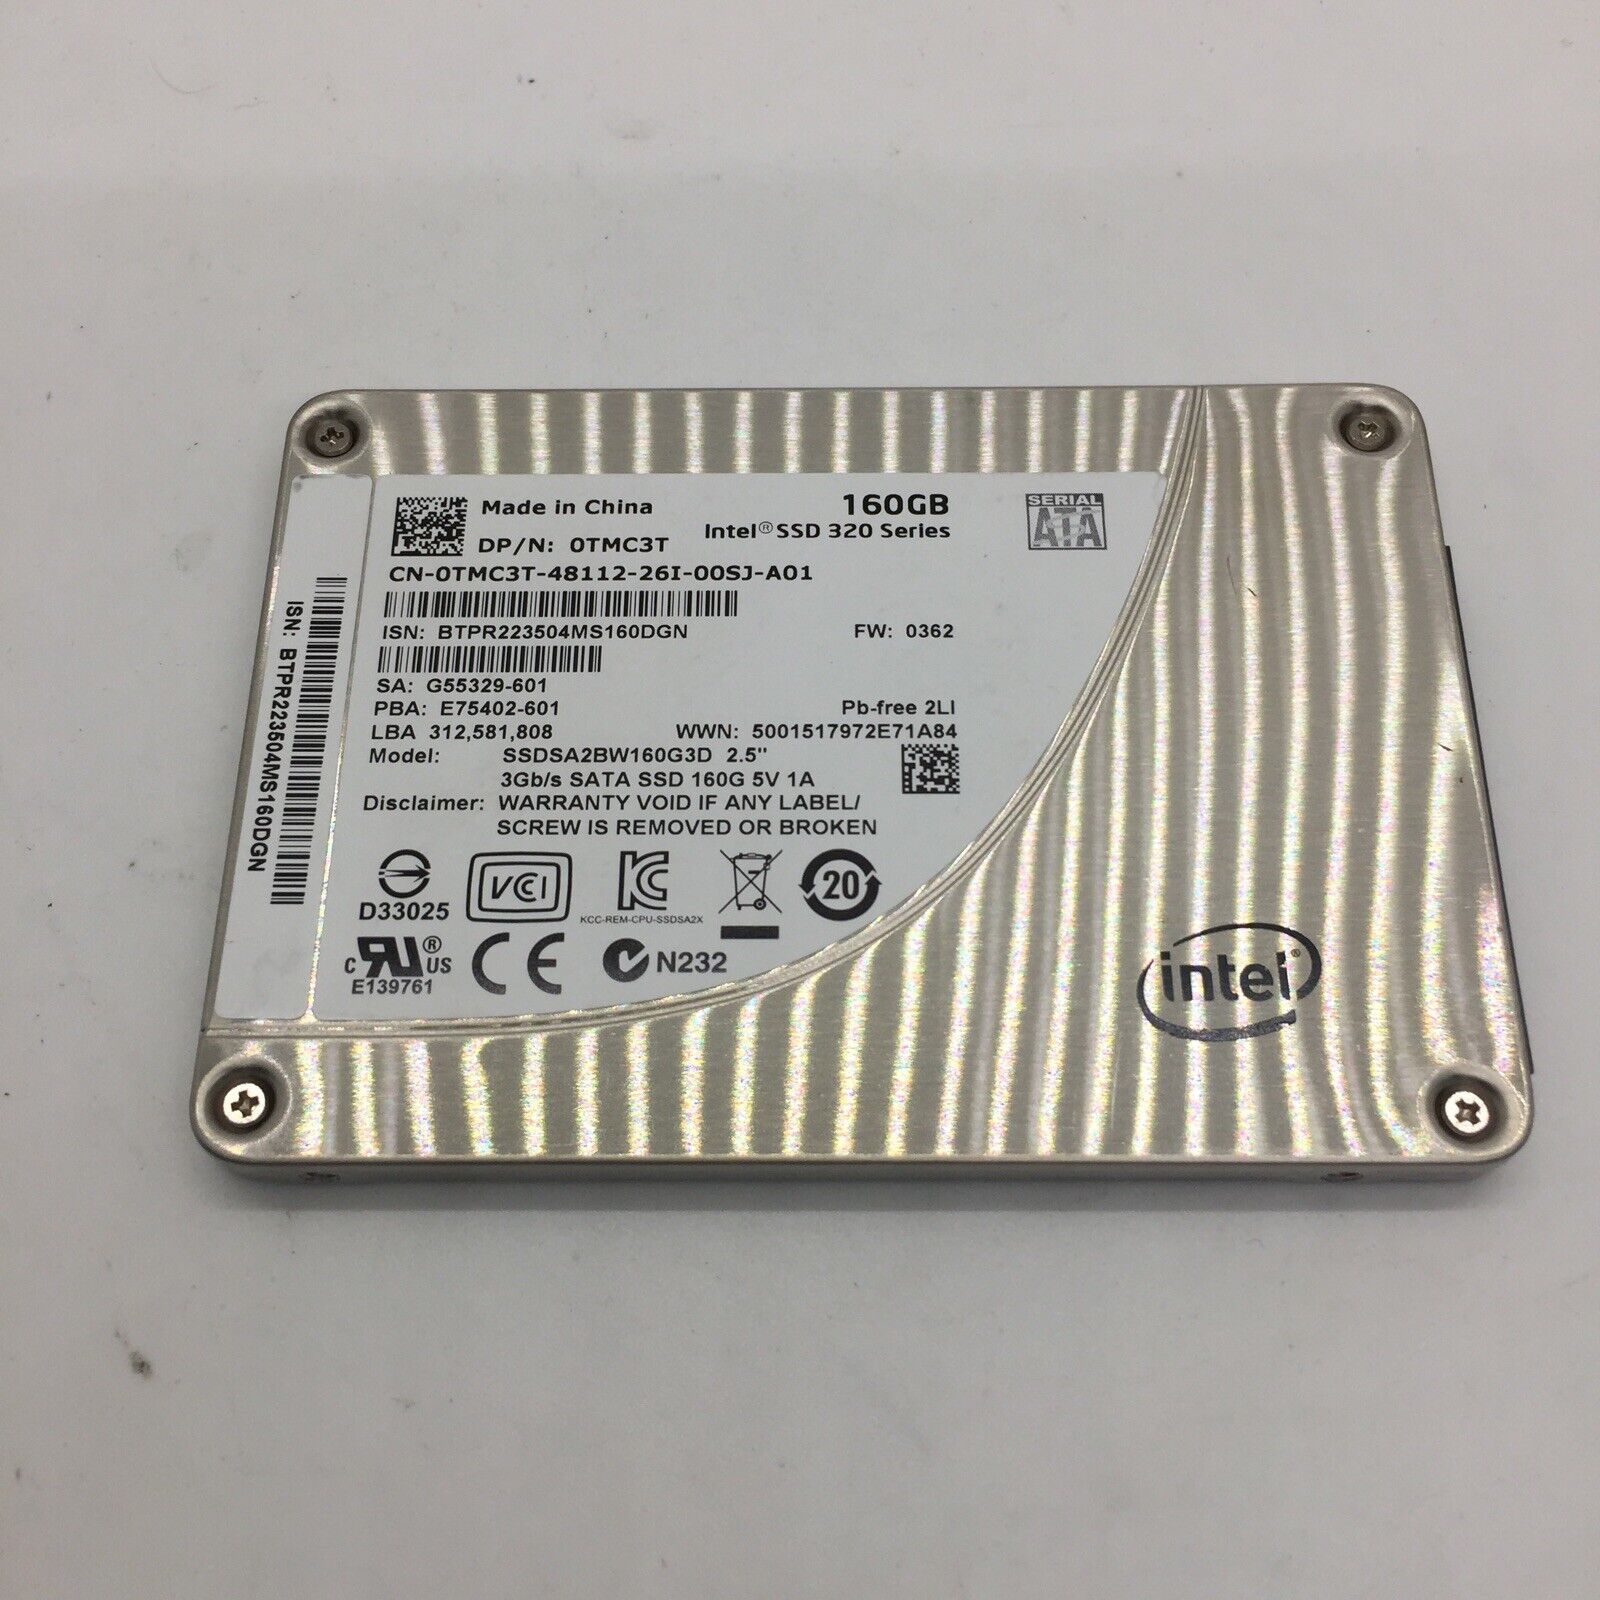 Intel 320 Series 3Gb/s 160GB 2.5